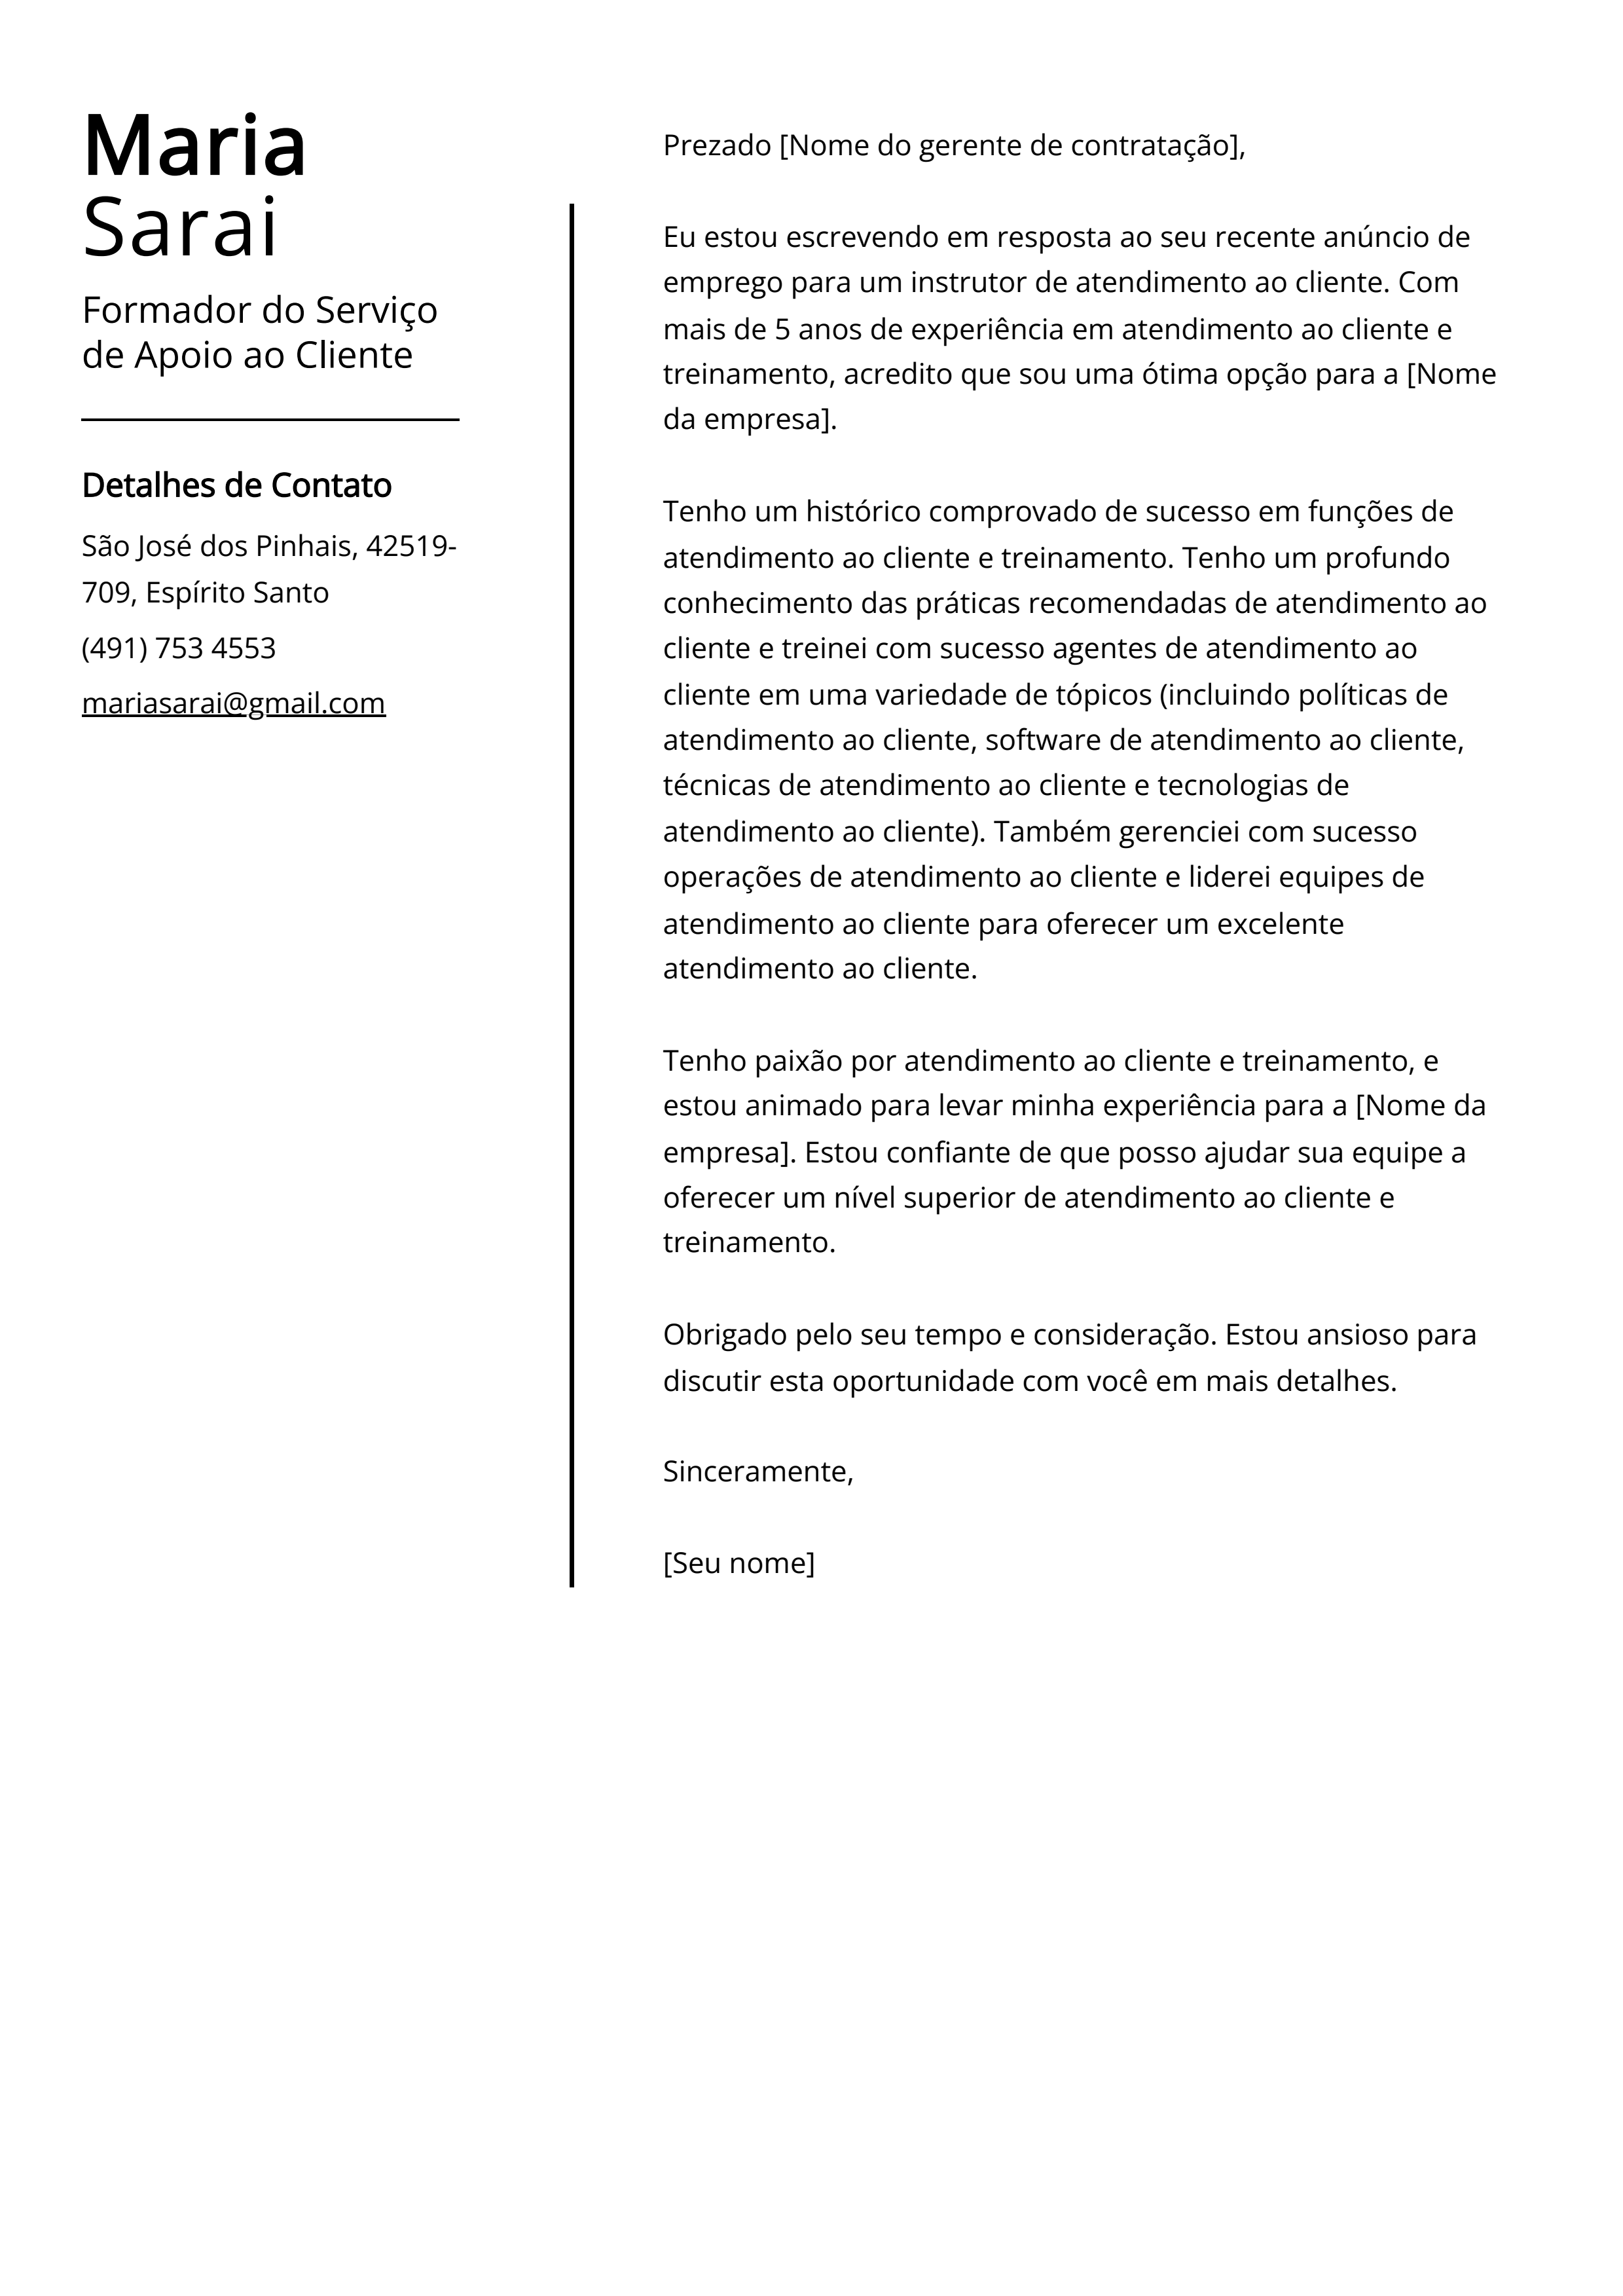 Exemplo de carta de apresentação do Formador do Serviço de Apoio ao Cliente